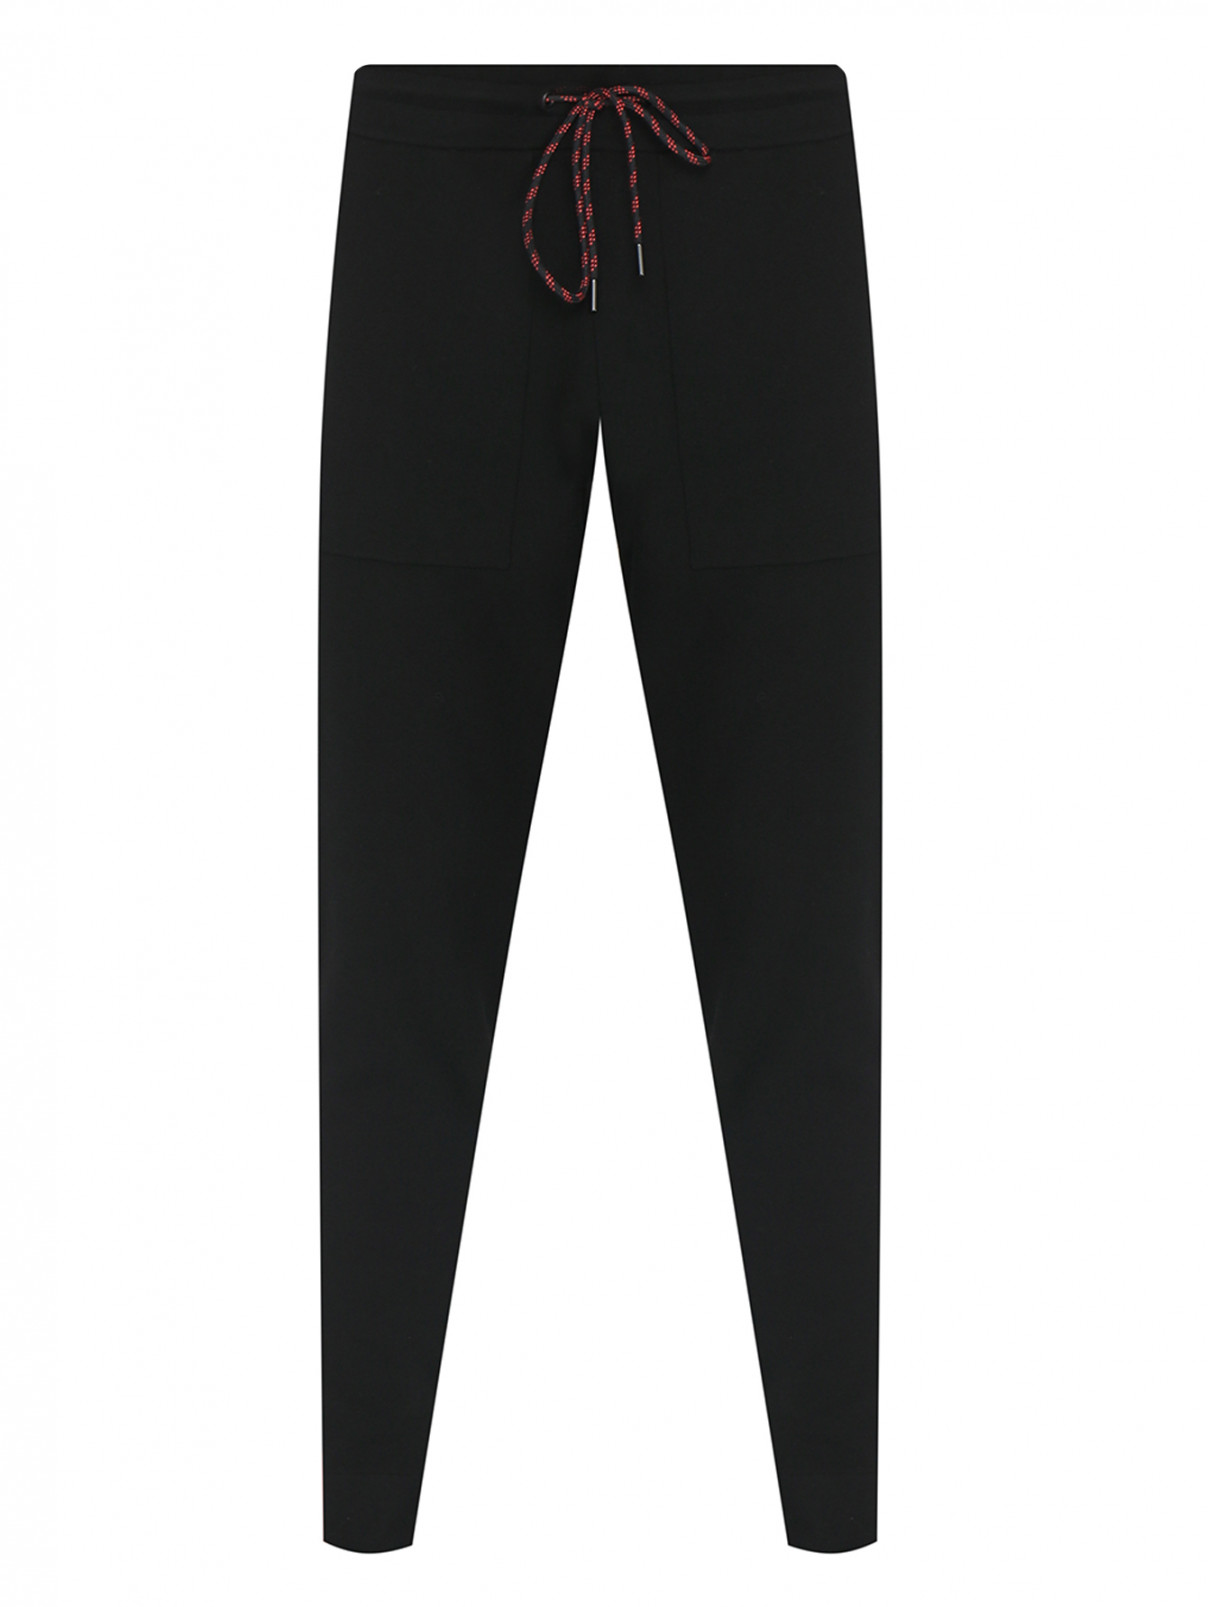 Трикотажные брюки на резинке с лампасами Michael by Michael Kors  –  Общий вид  – Цвет:  Черный